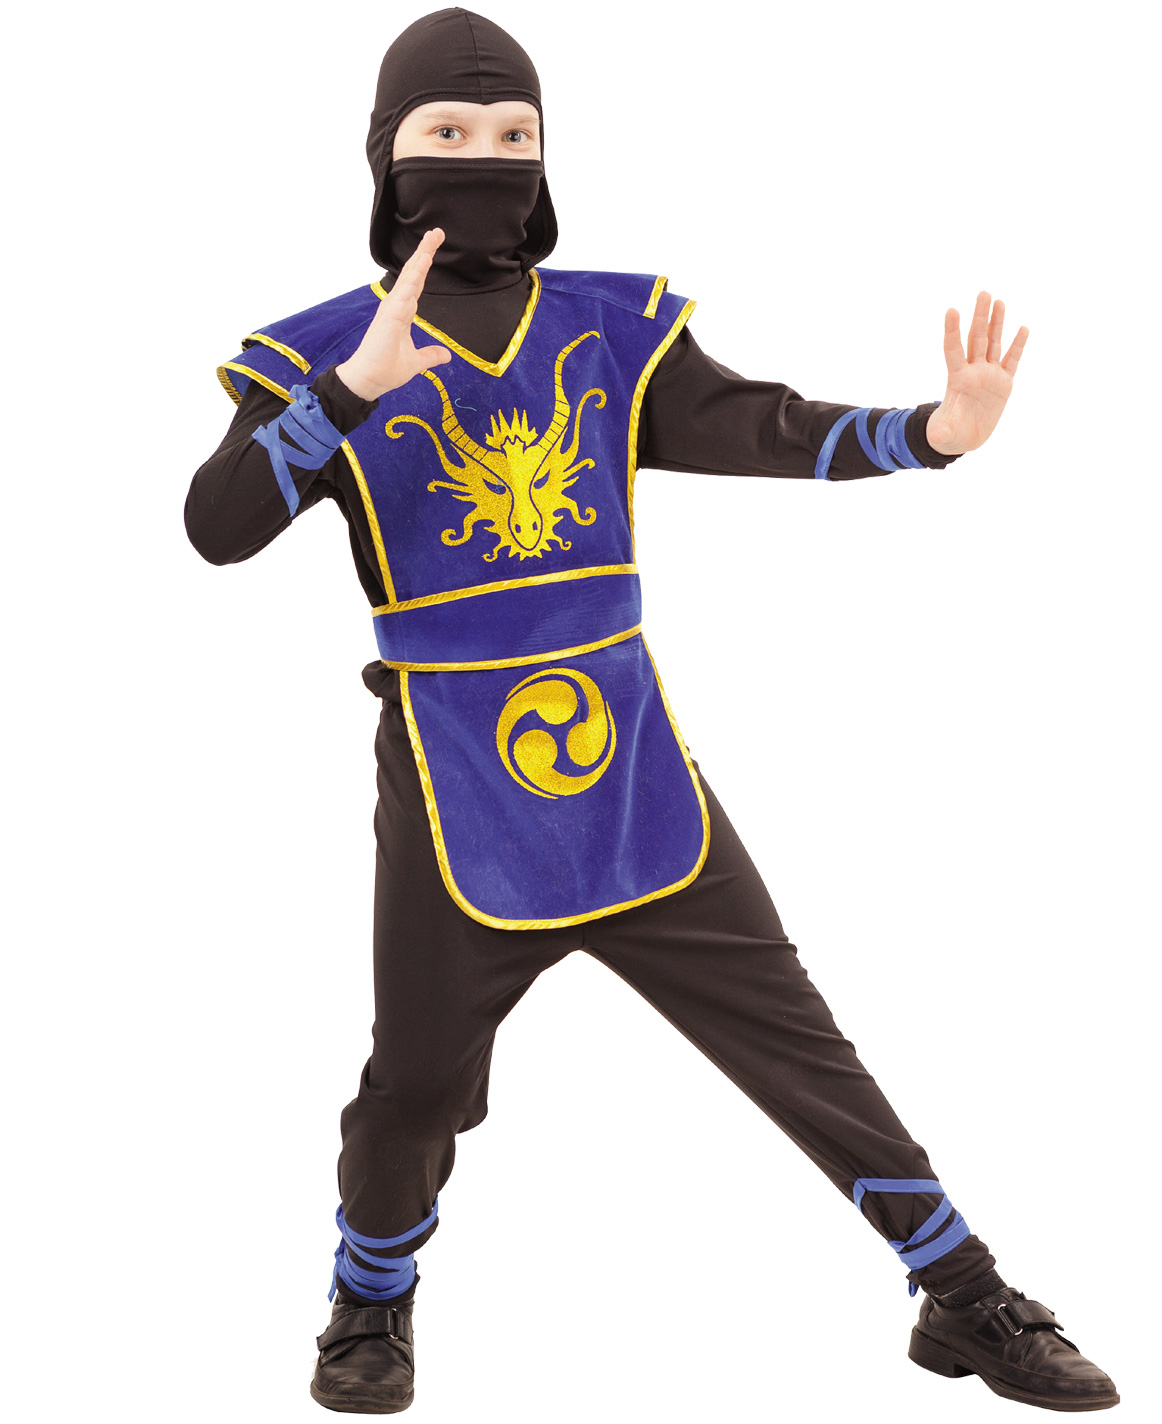 2053 к-18 Карнавальный костюм Ниндзя (куртка,трико, накидка с поясом, шапка, меч) размер 110-28